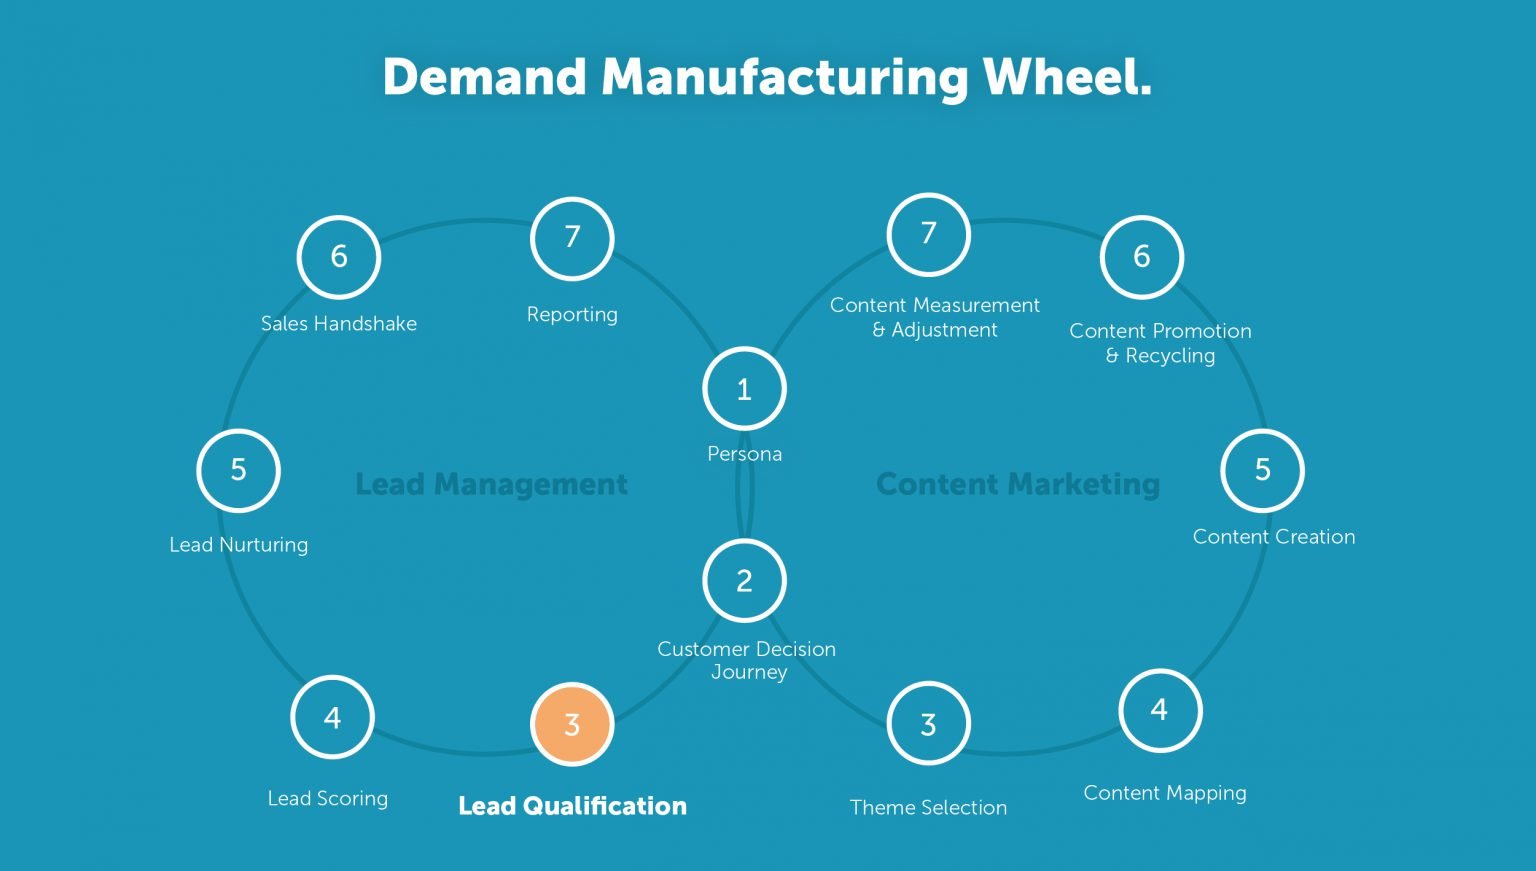 Demand Manufacturing Wheel